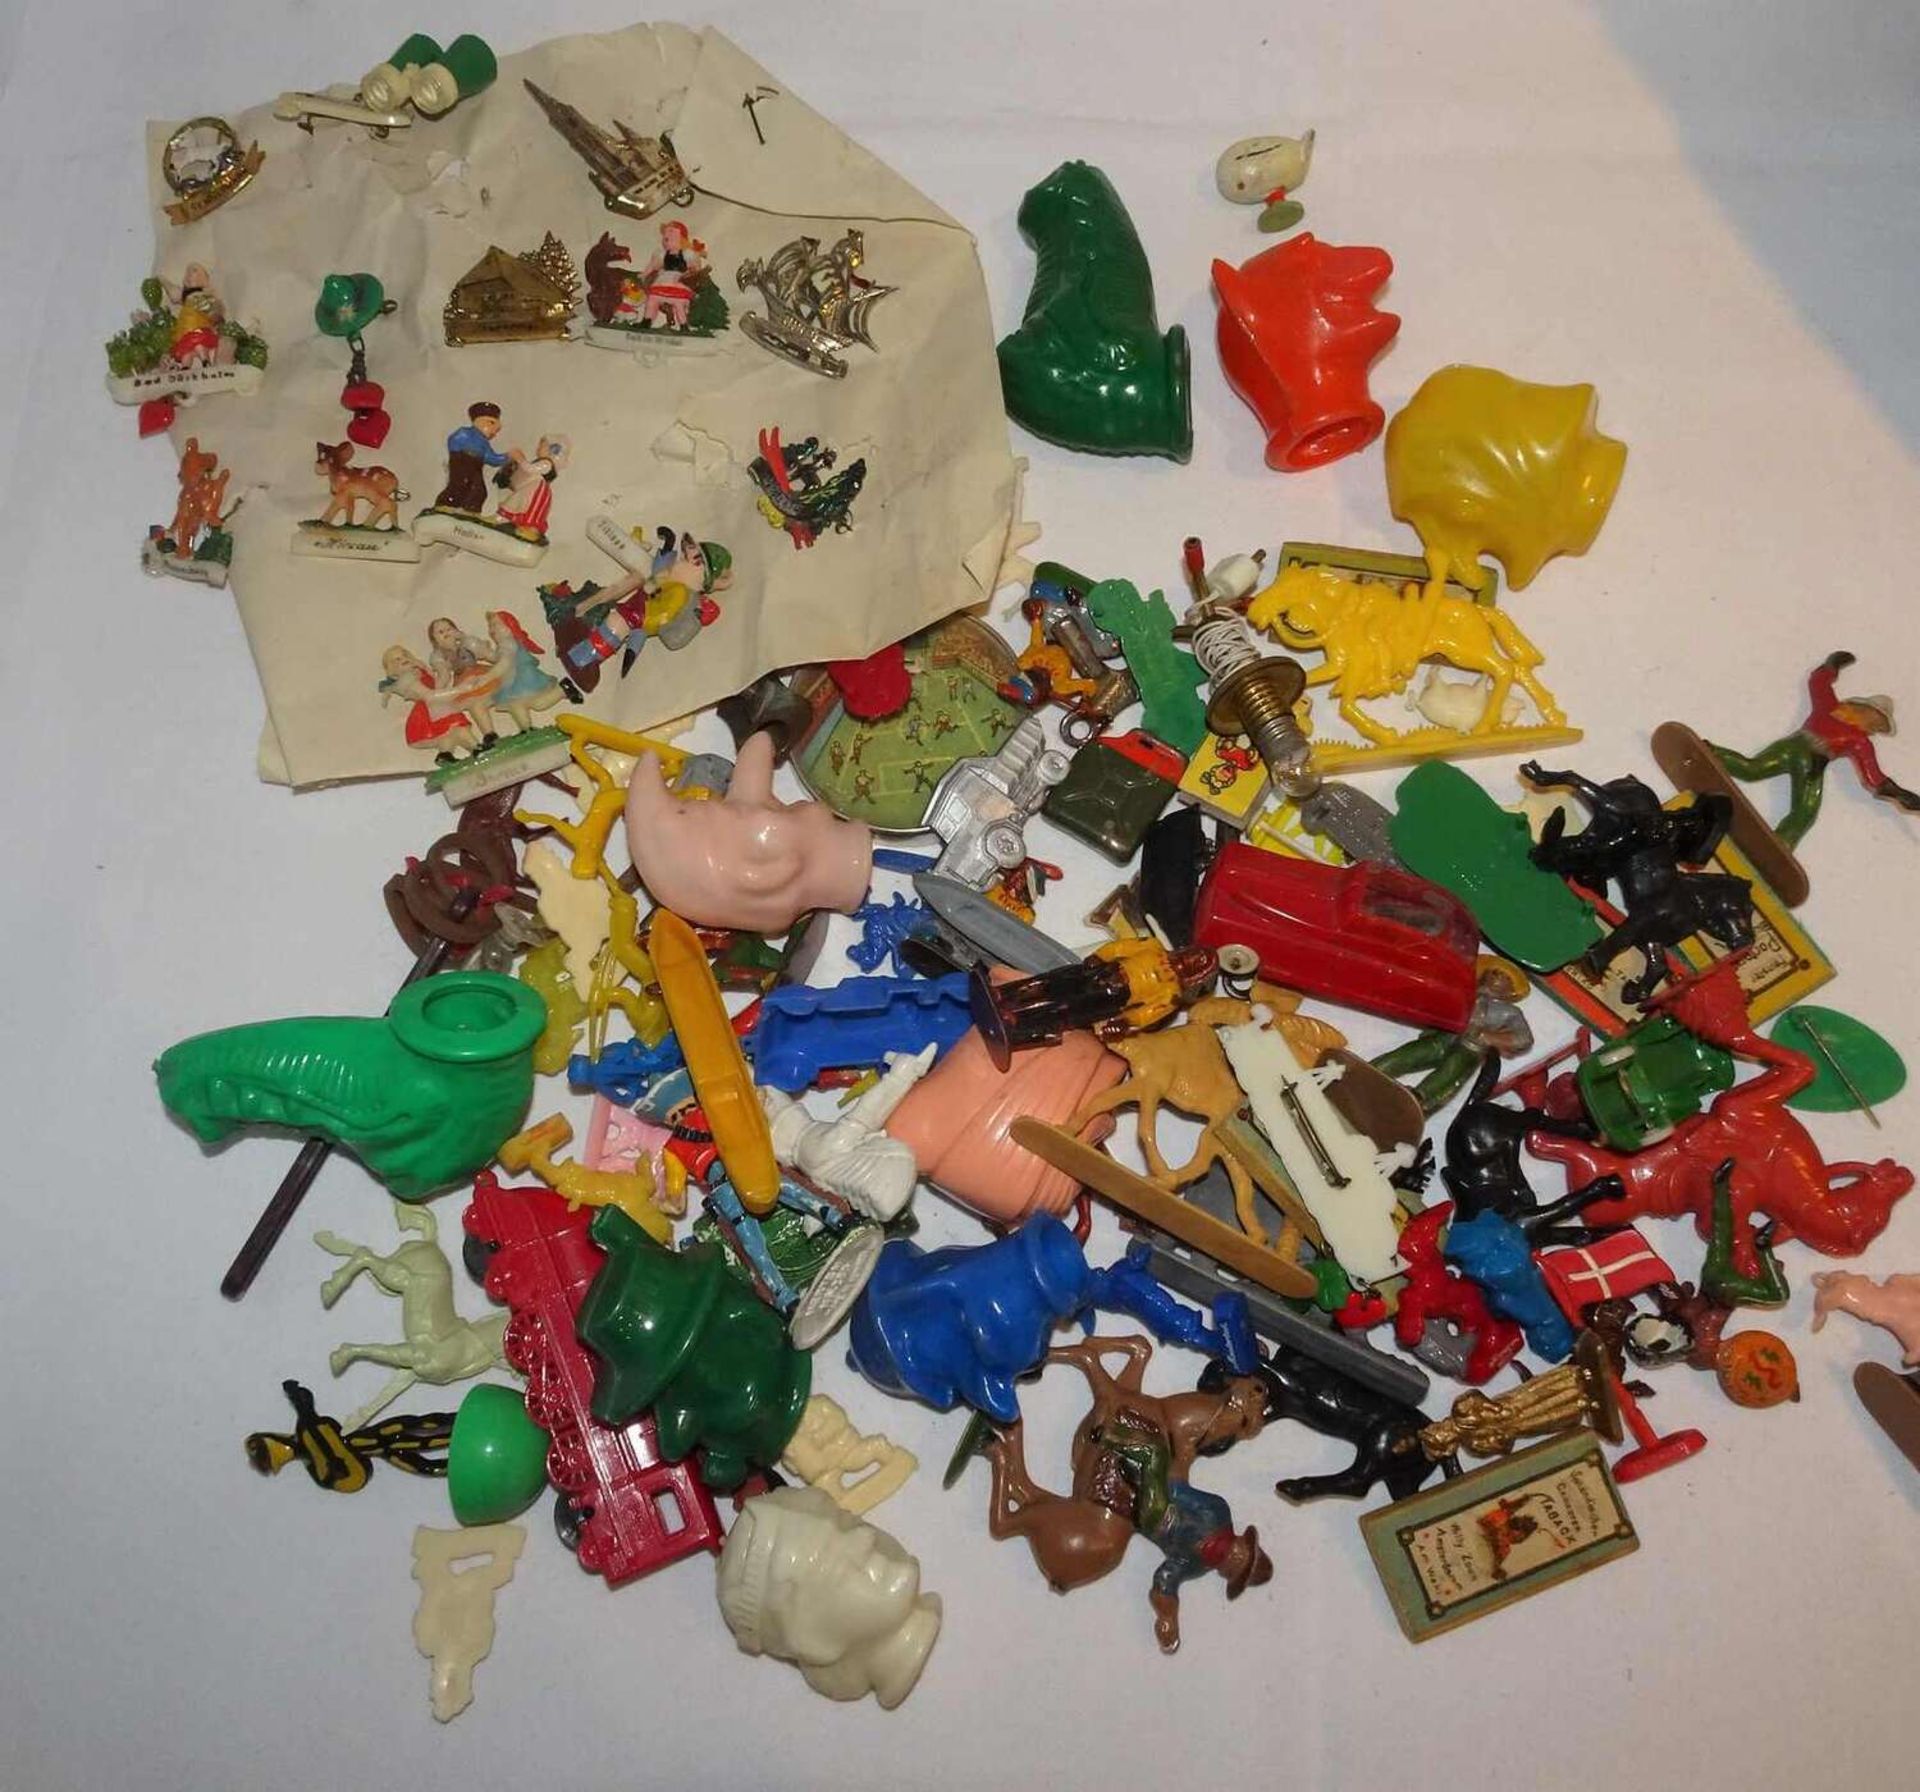 Lot Spielzeug, 30 - 40er Jahre, dabei Plastikautos, Fingerpuppen etc., sicher kleine Fundgrube. Lot